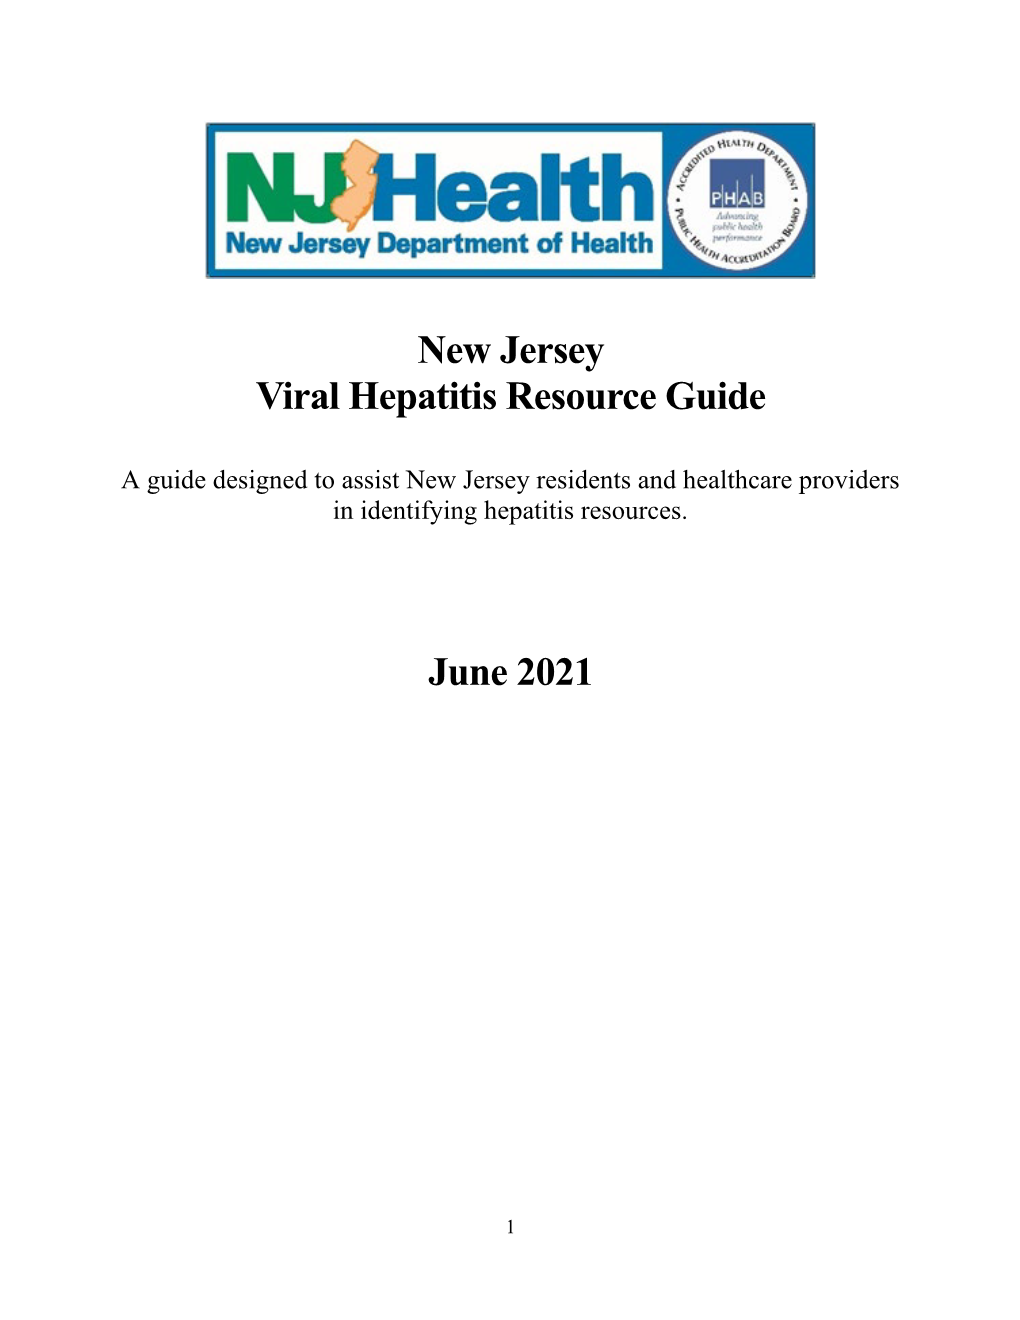 New Jersey Viral Hepatitis Resource Guide June 2021